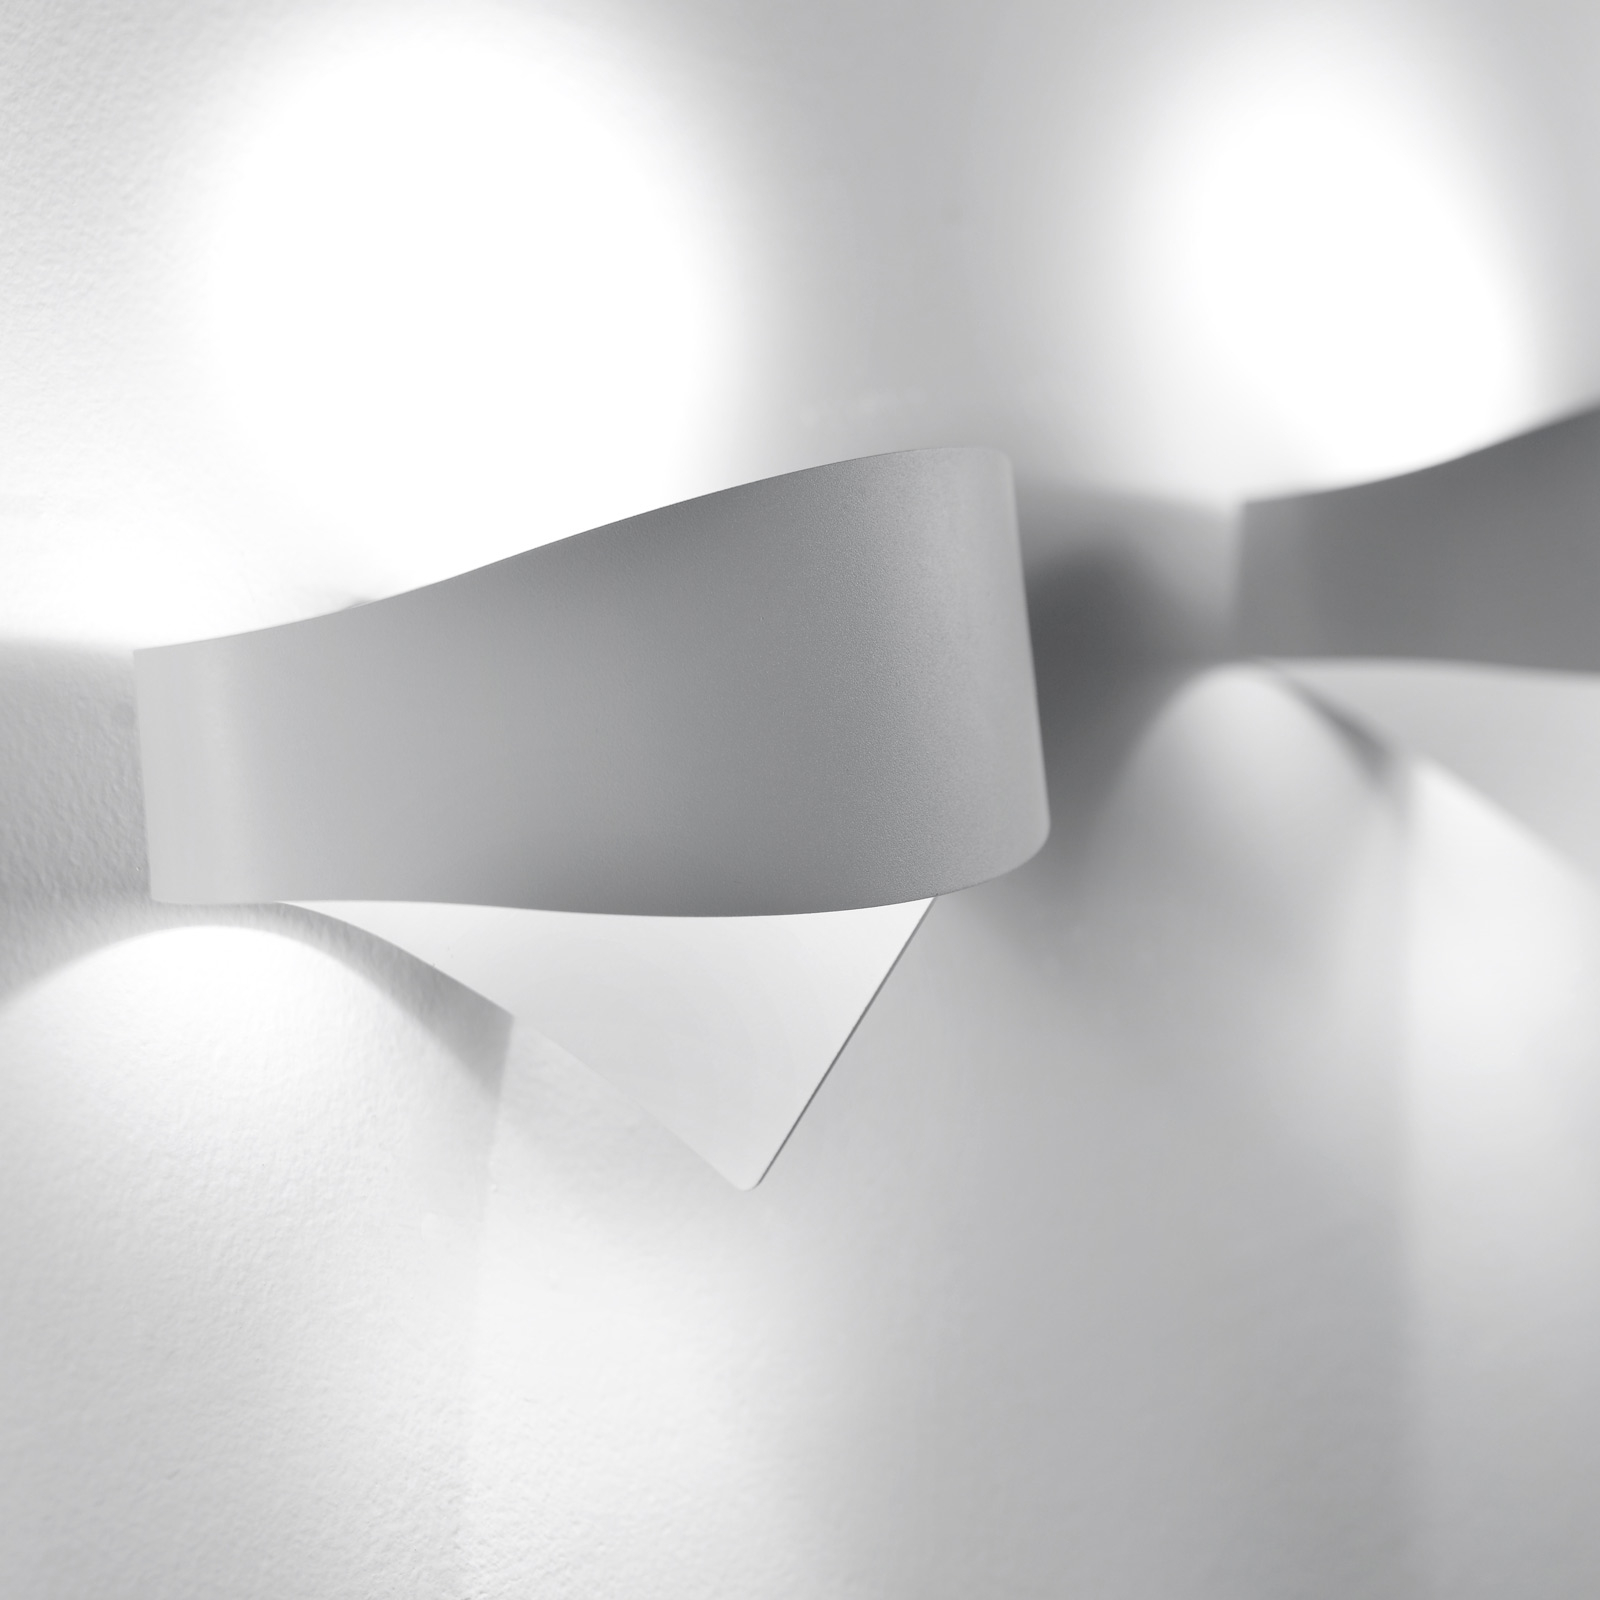 LED fali lámpa Scudo acélból, fehér színben